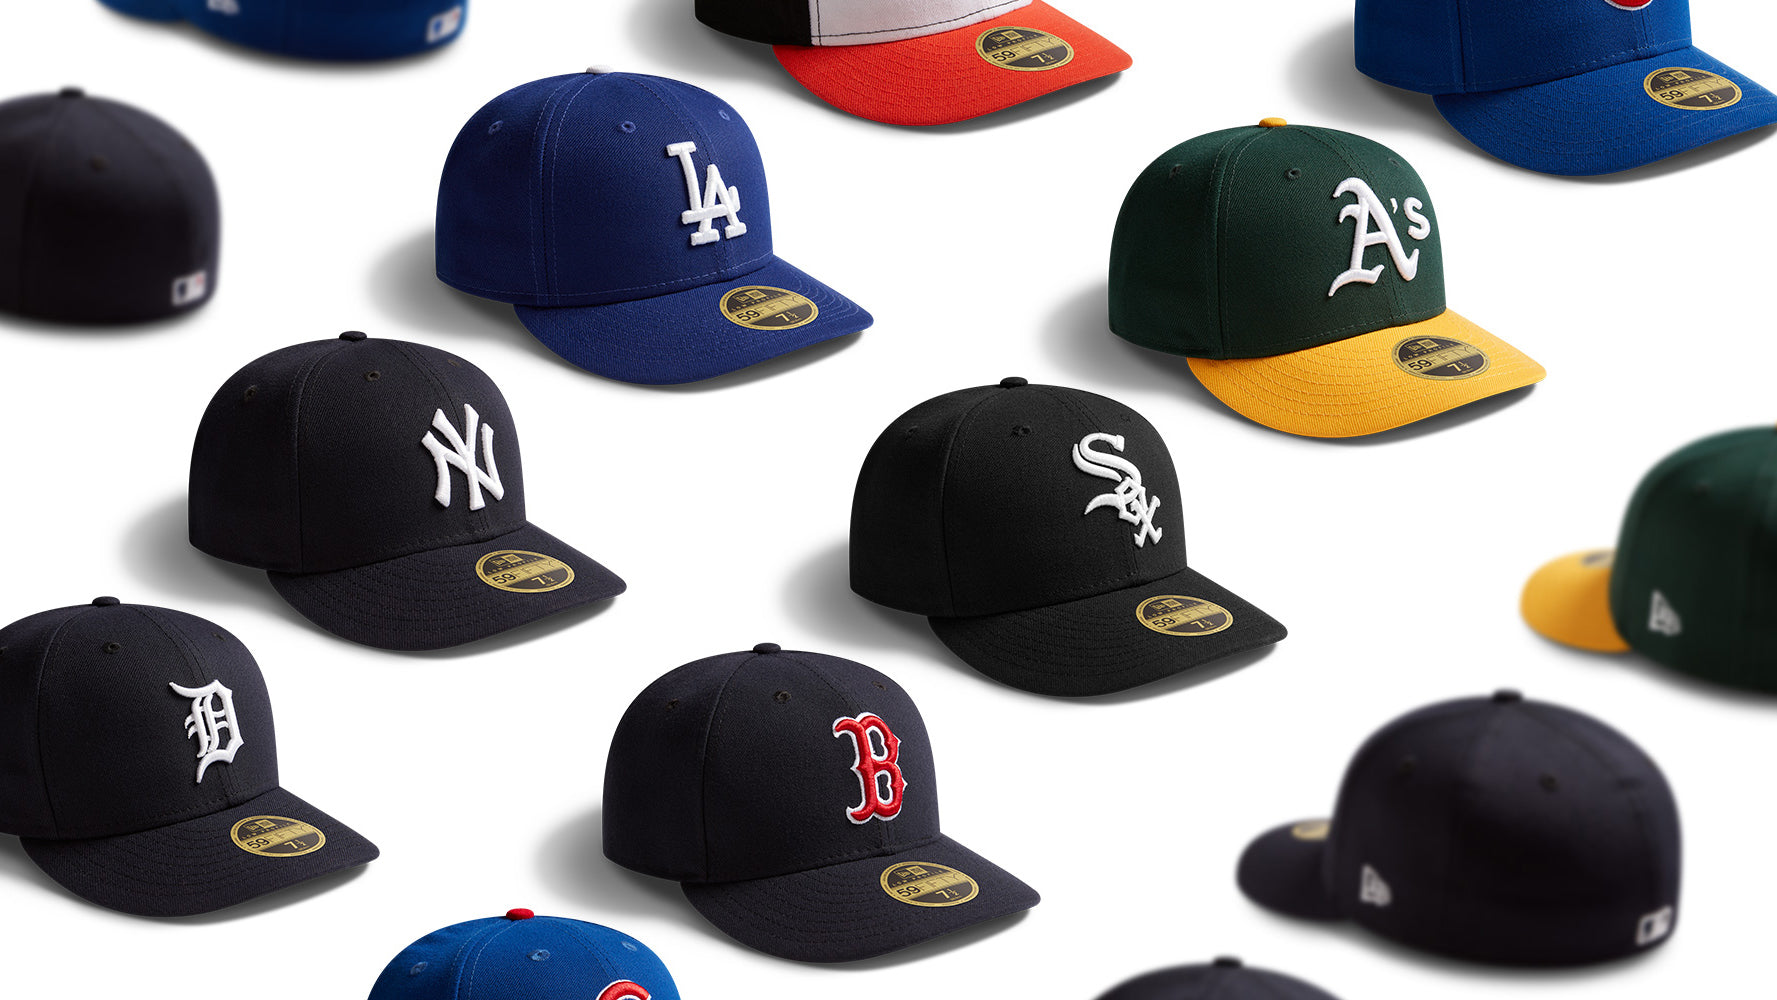 New Era Cap Australia   Baseball Hats, Caps & Apparel